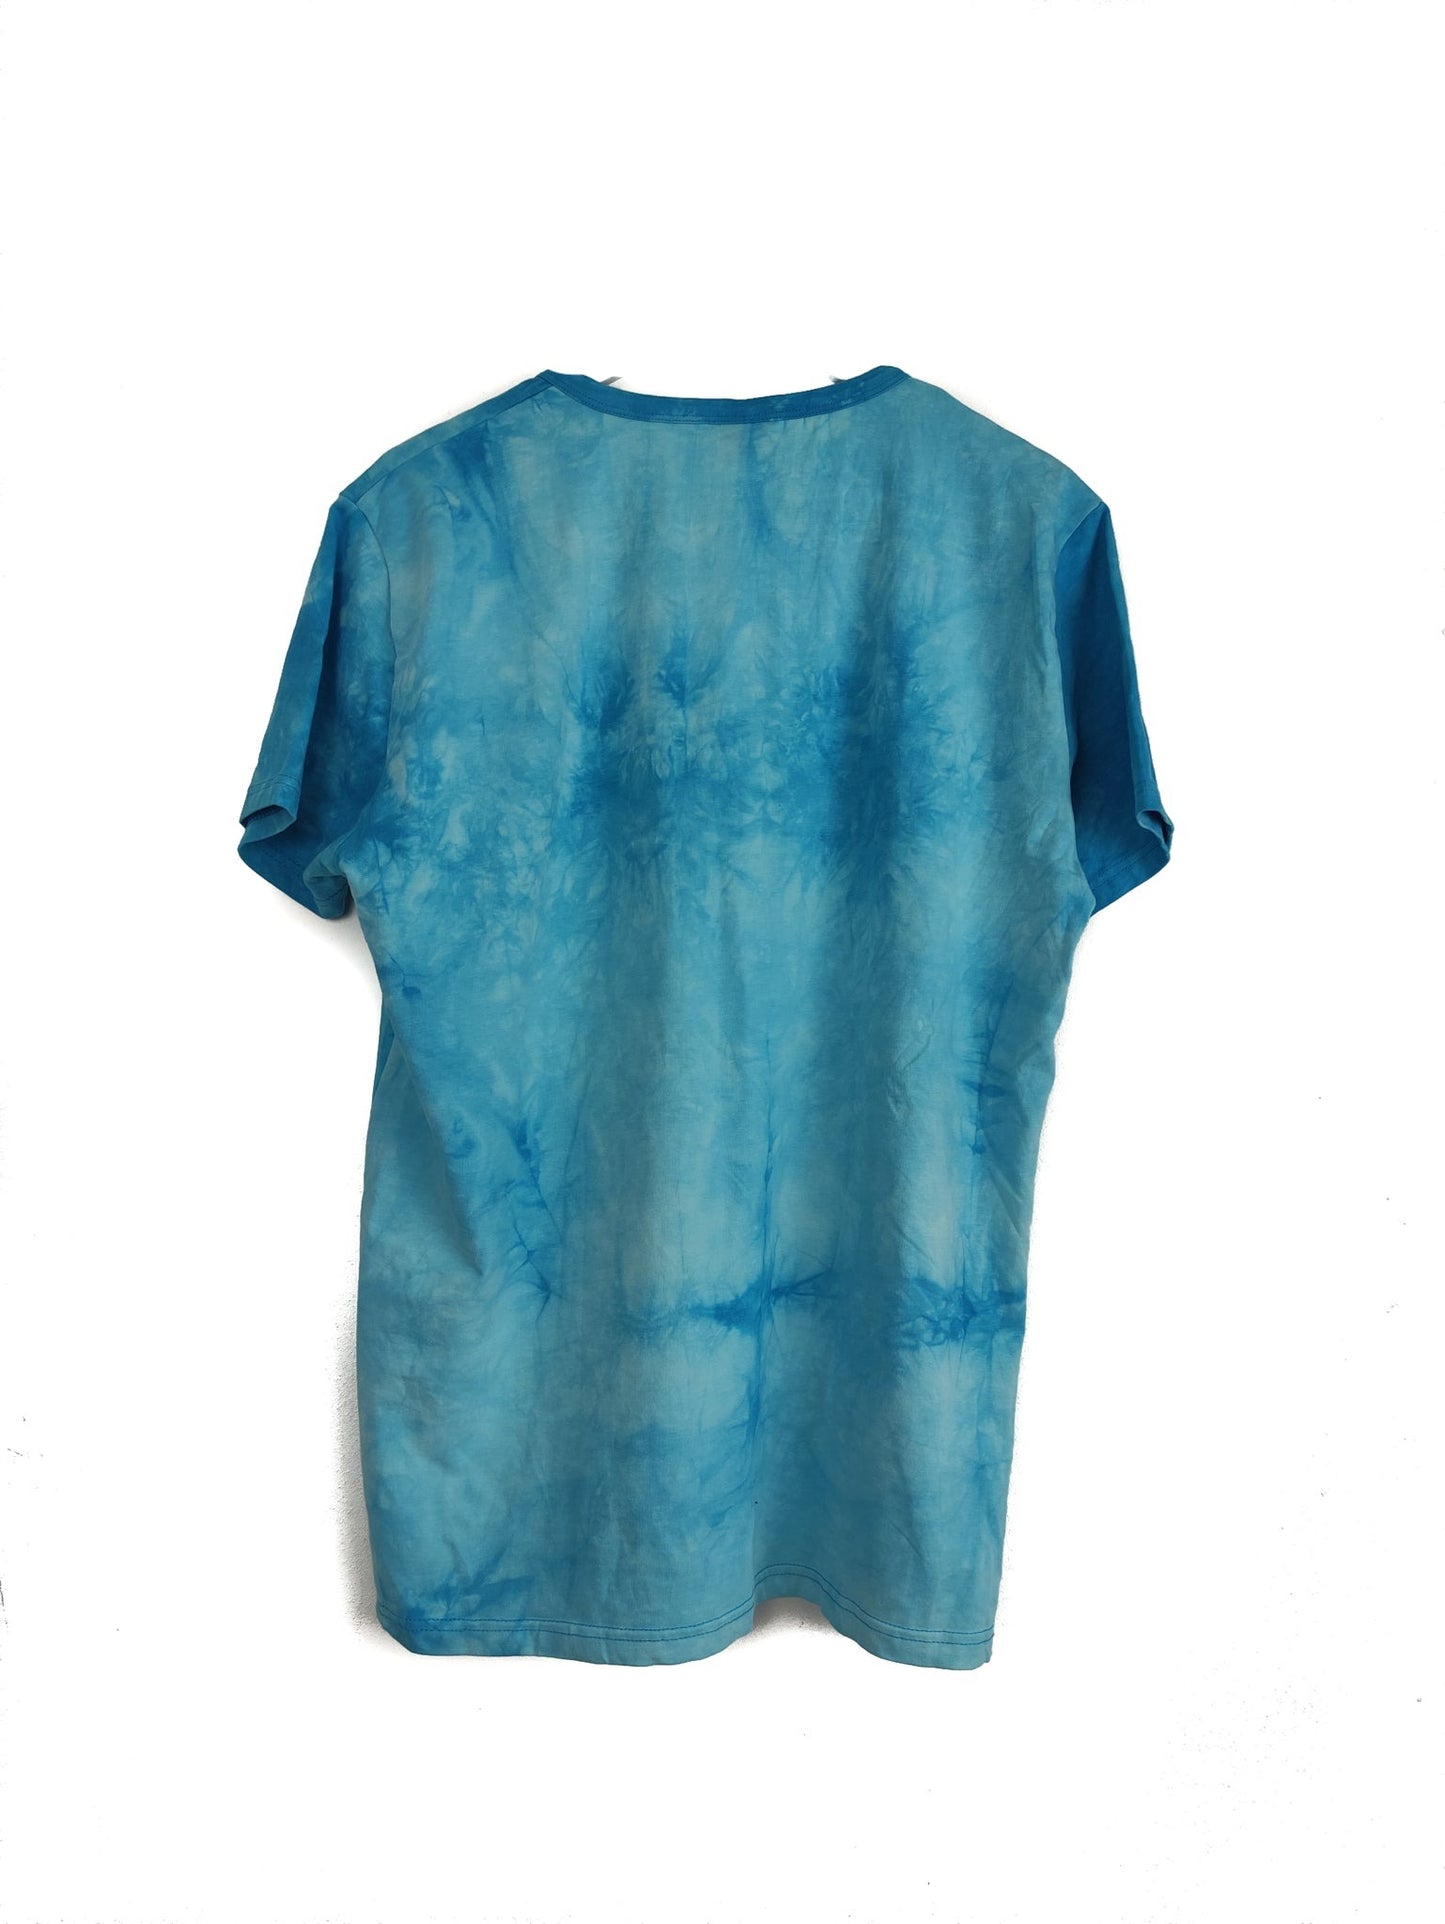 Ανδρική Μπλούζα T- Shirt REDWAY σε Γαλάζιο χρώμα (Large)